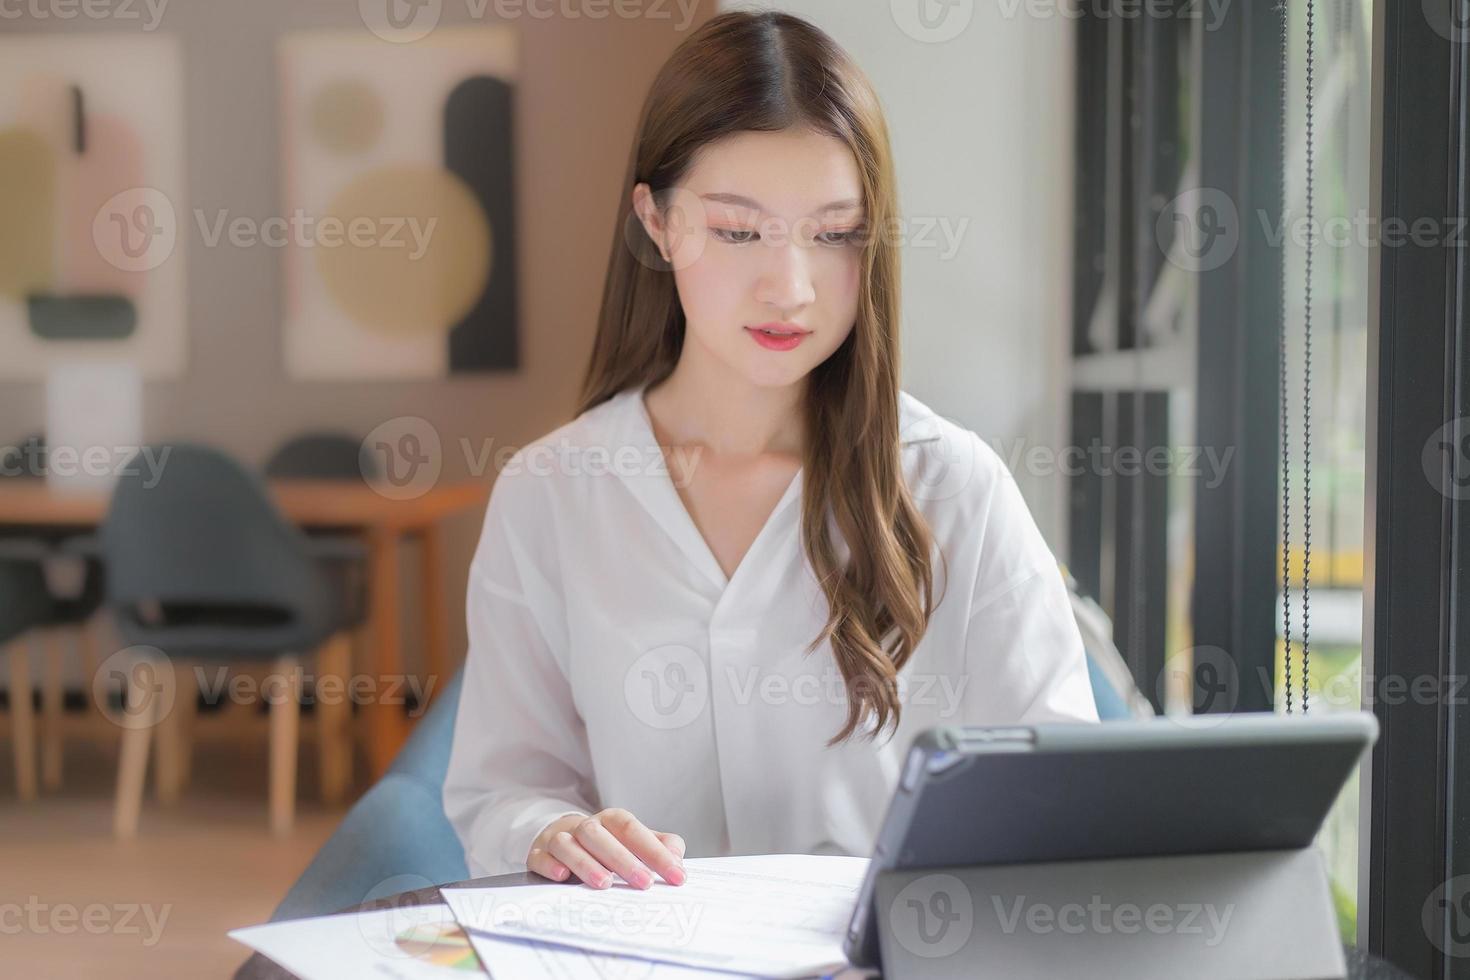 una mujer asiática segura de sí misma que usa una camisa blanca está usando una tableta para trabajar y hay muchos documentos sobre la mesa. su rostro con una sonrisa en una sala de trabajo en casa. foto